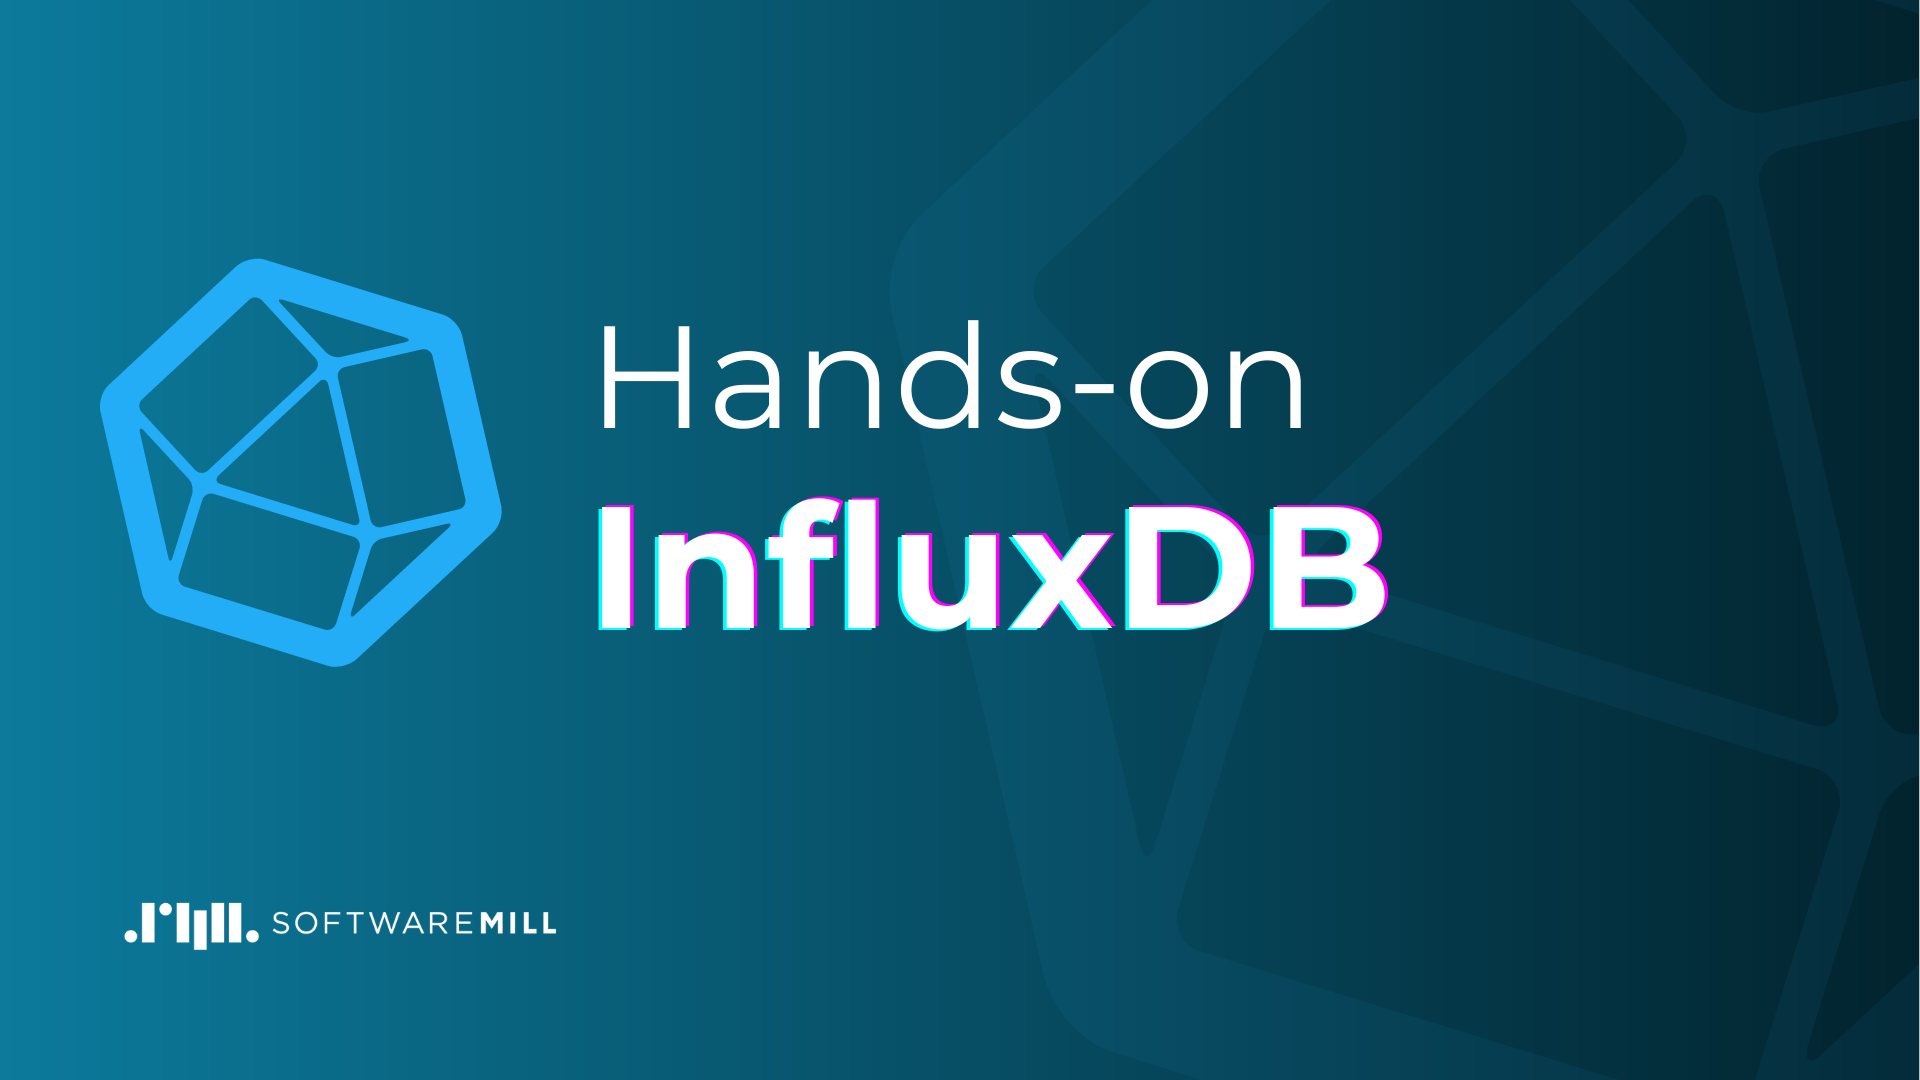 Hands-on InfluxDB webp image